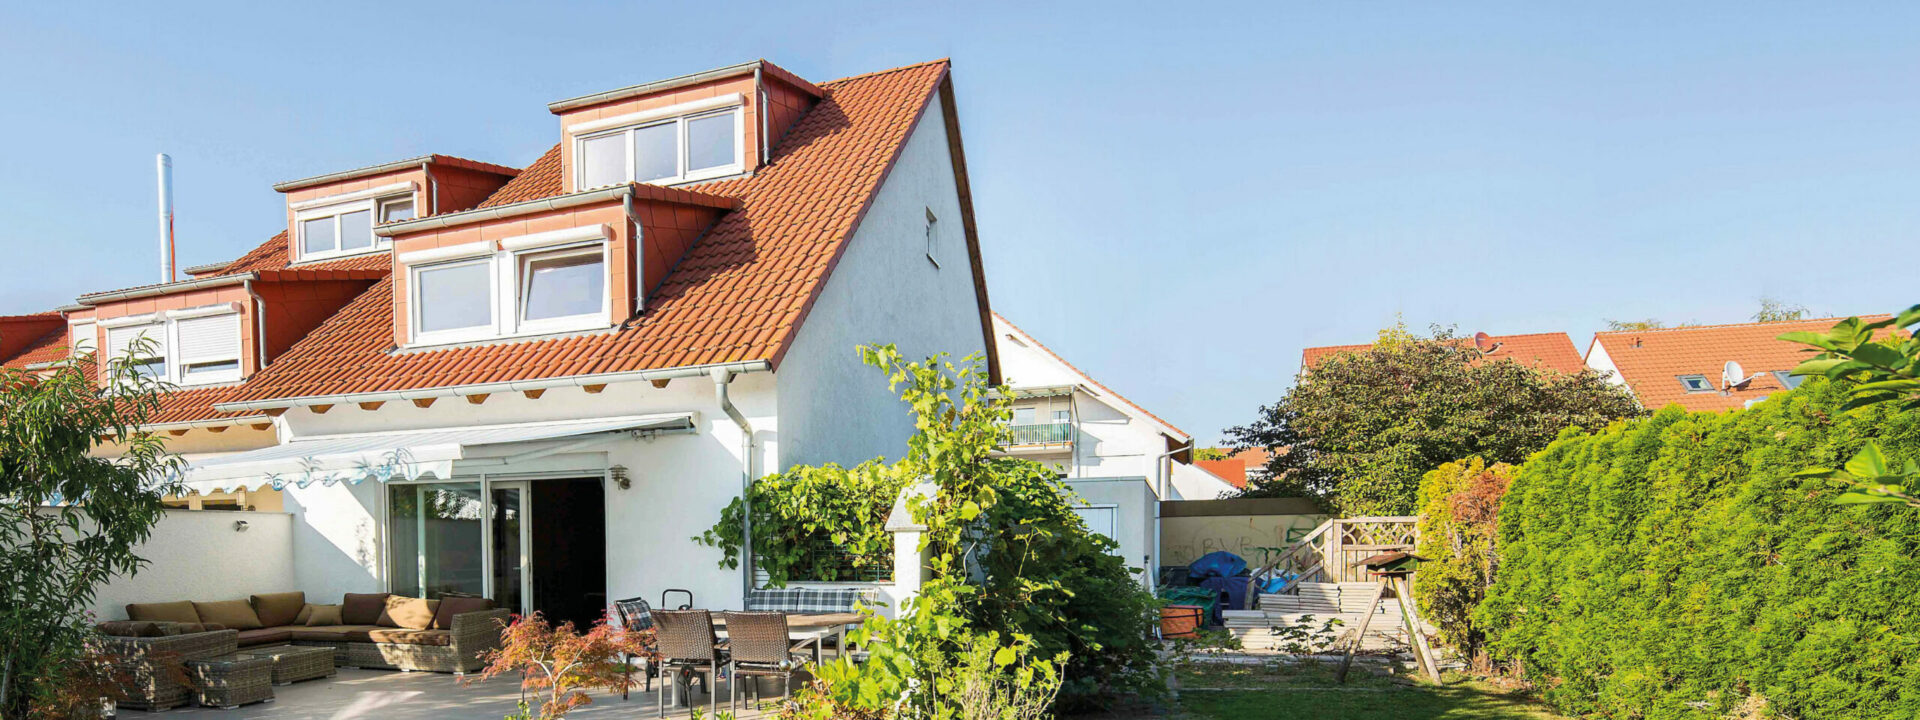 Ein modernes zweistöckiges Haus in Seckenheim mit weißer Fassade, rotem Dach und üppigem Garten unter einem klaren blauen Himmel.